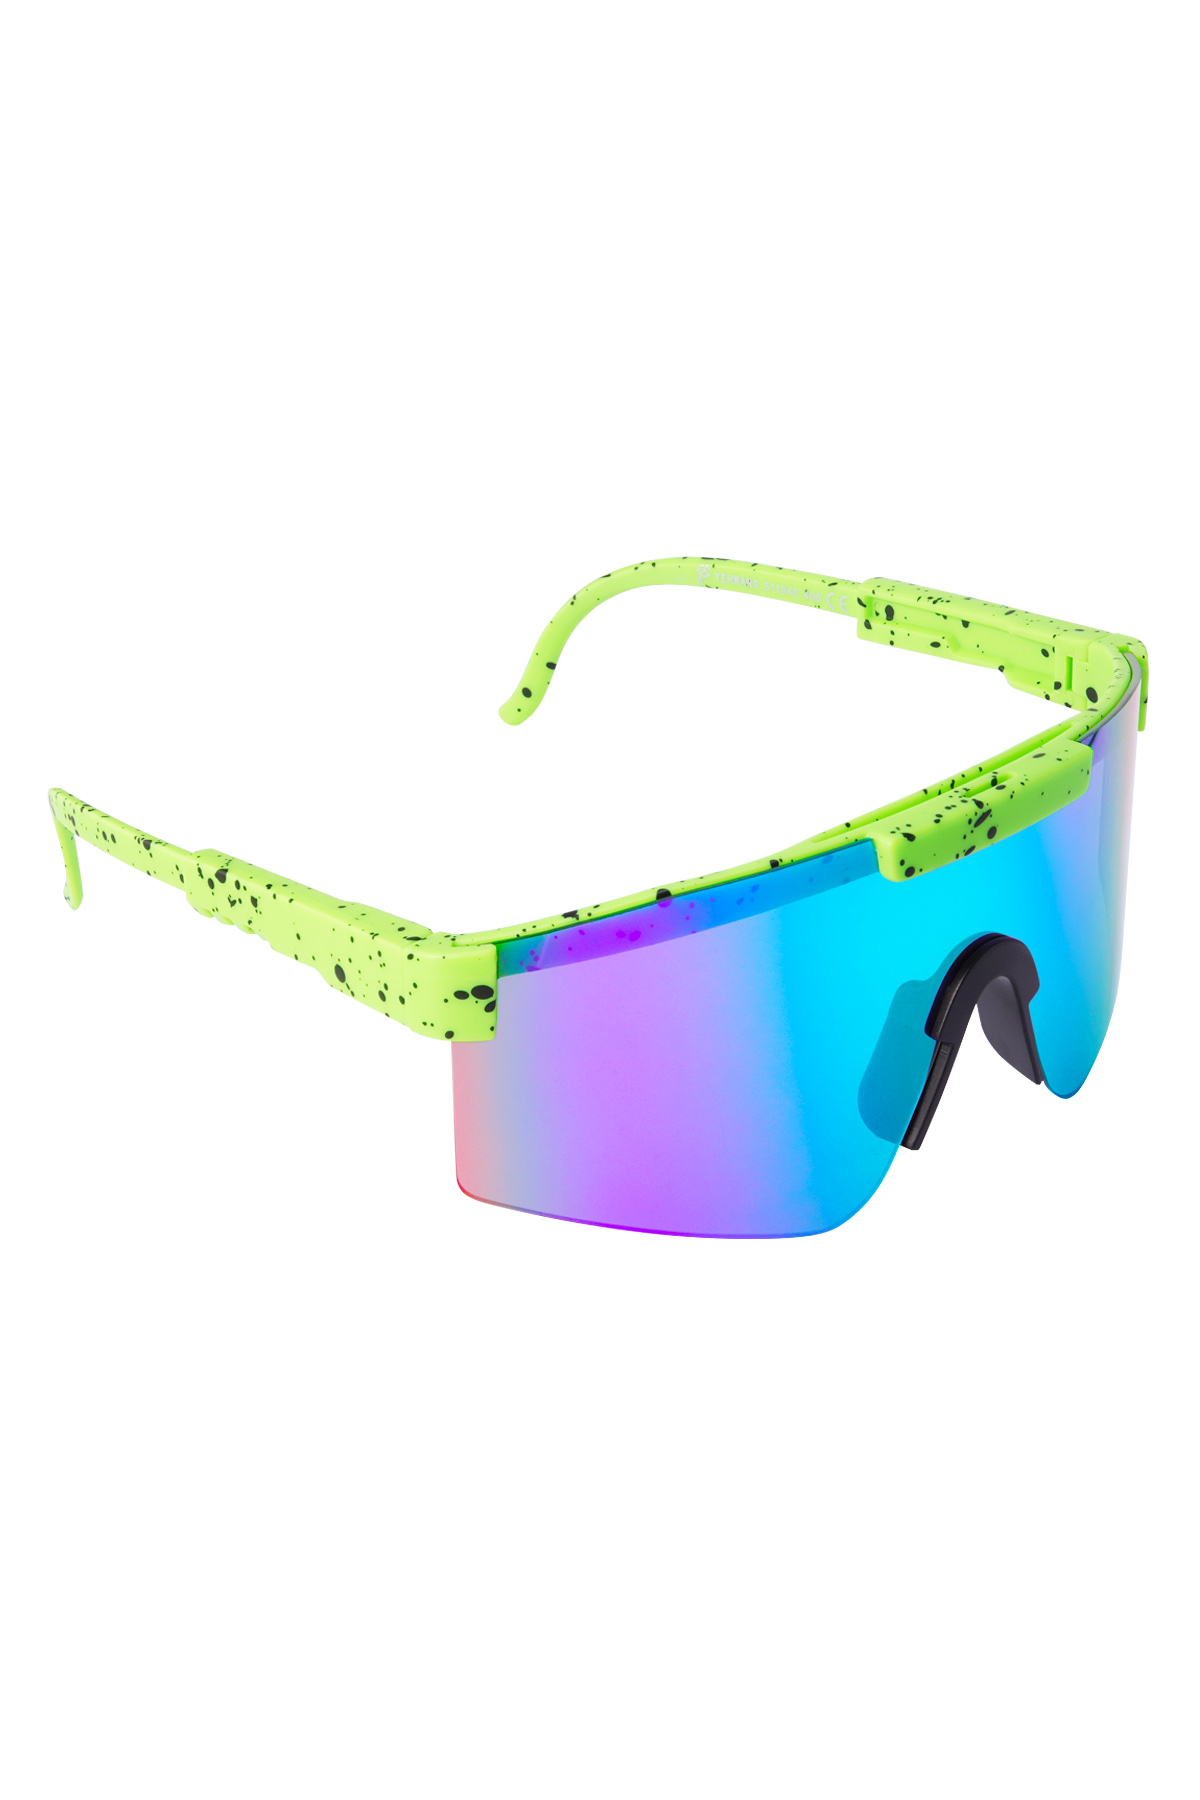 Güneş gözlüğü baskılı renkli lensler - yeşil 